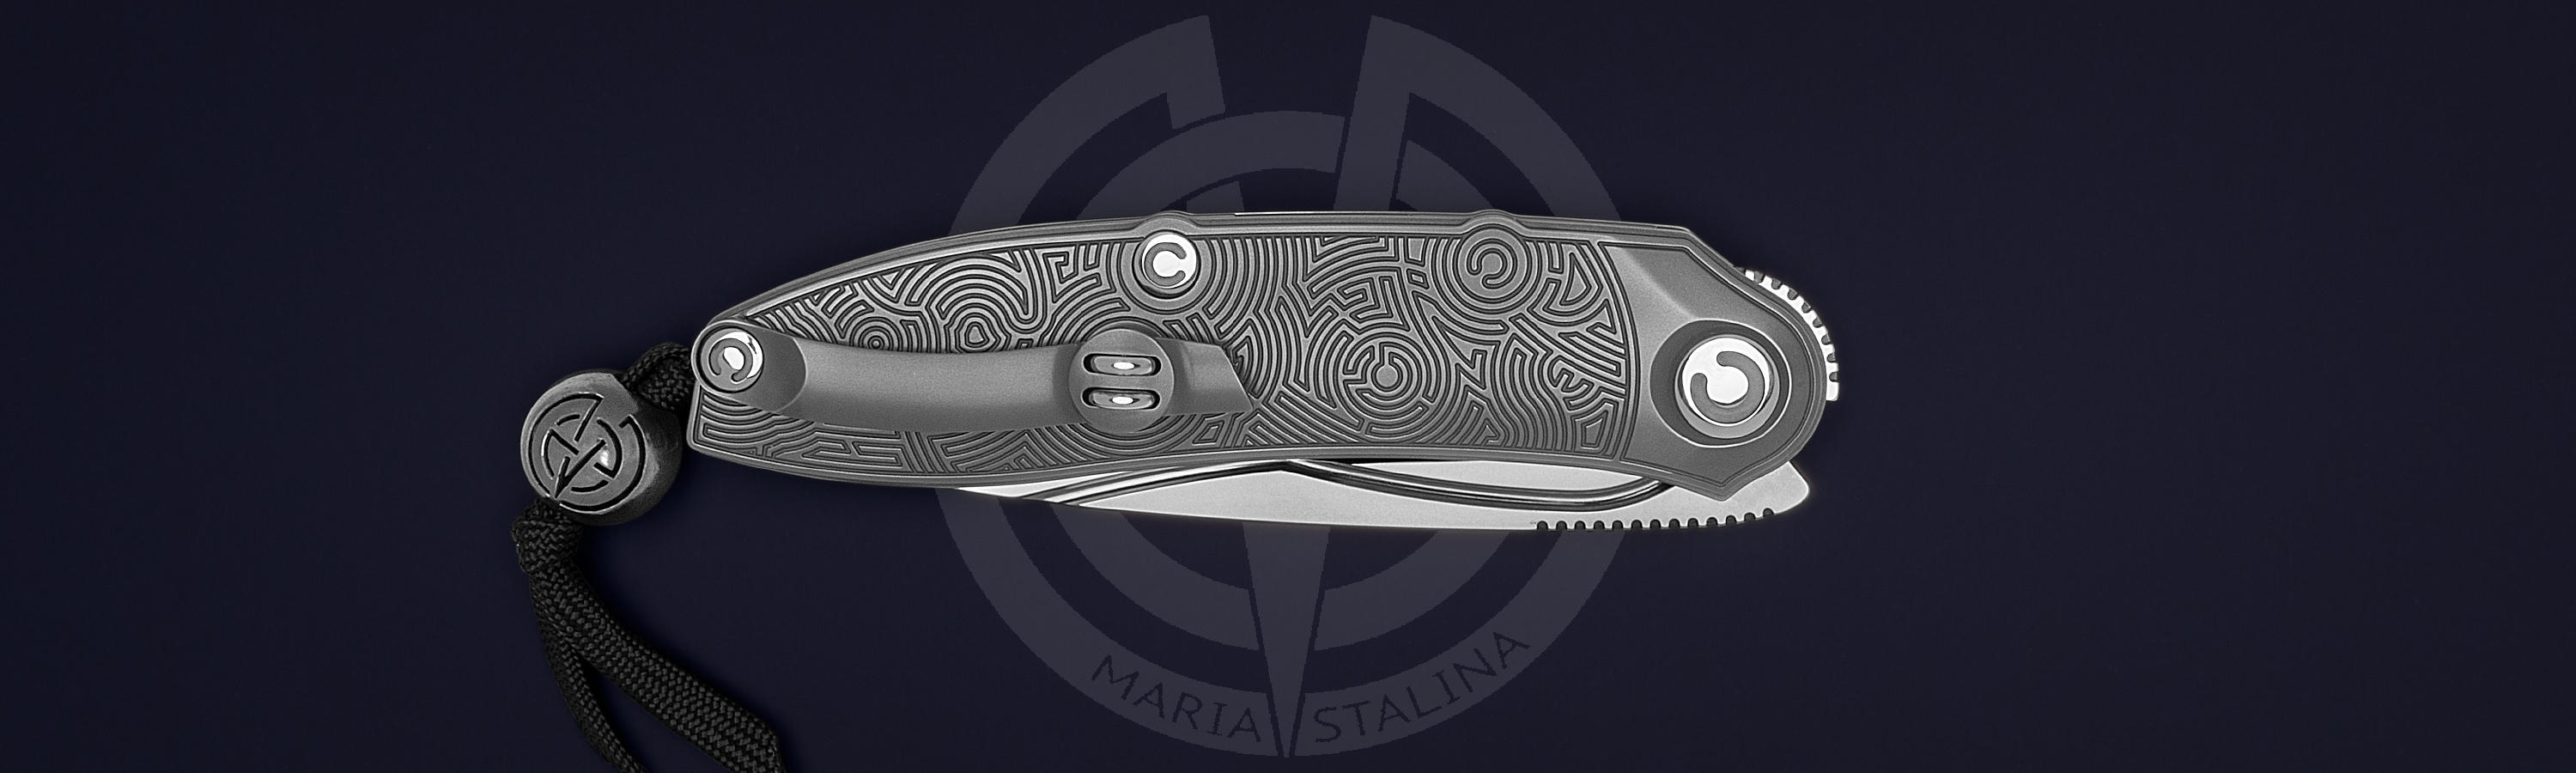 Engraved knife Technoshaman BA Run1 6/10